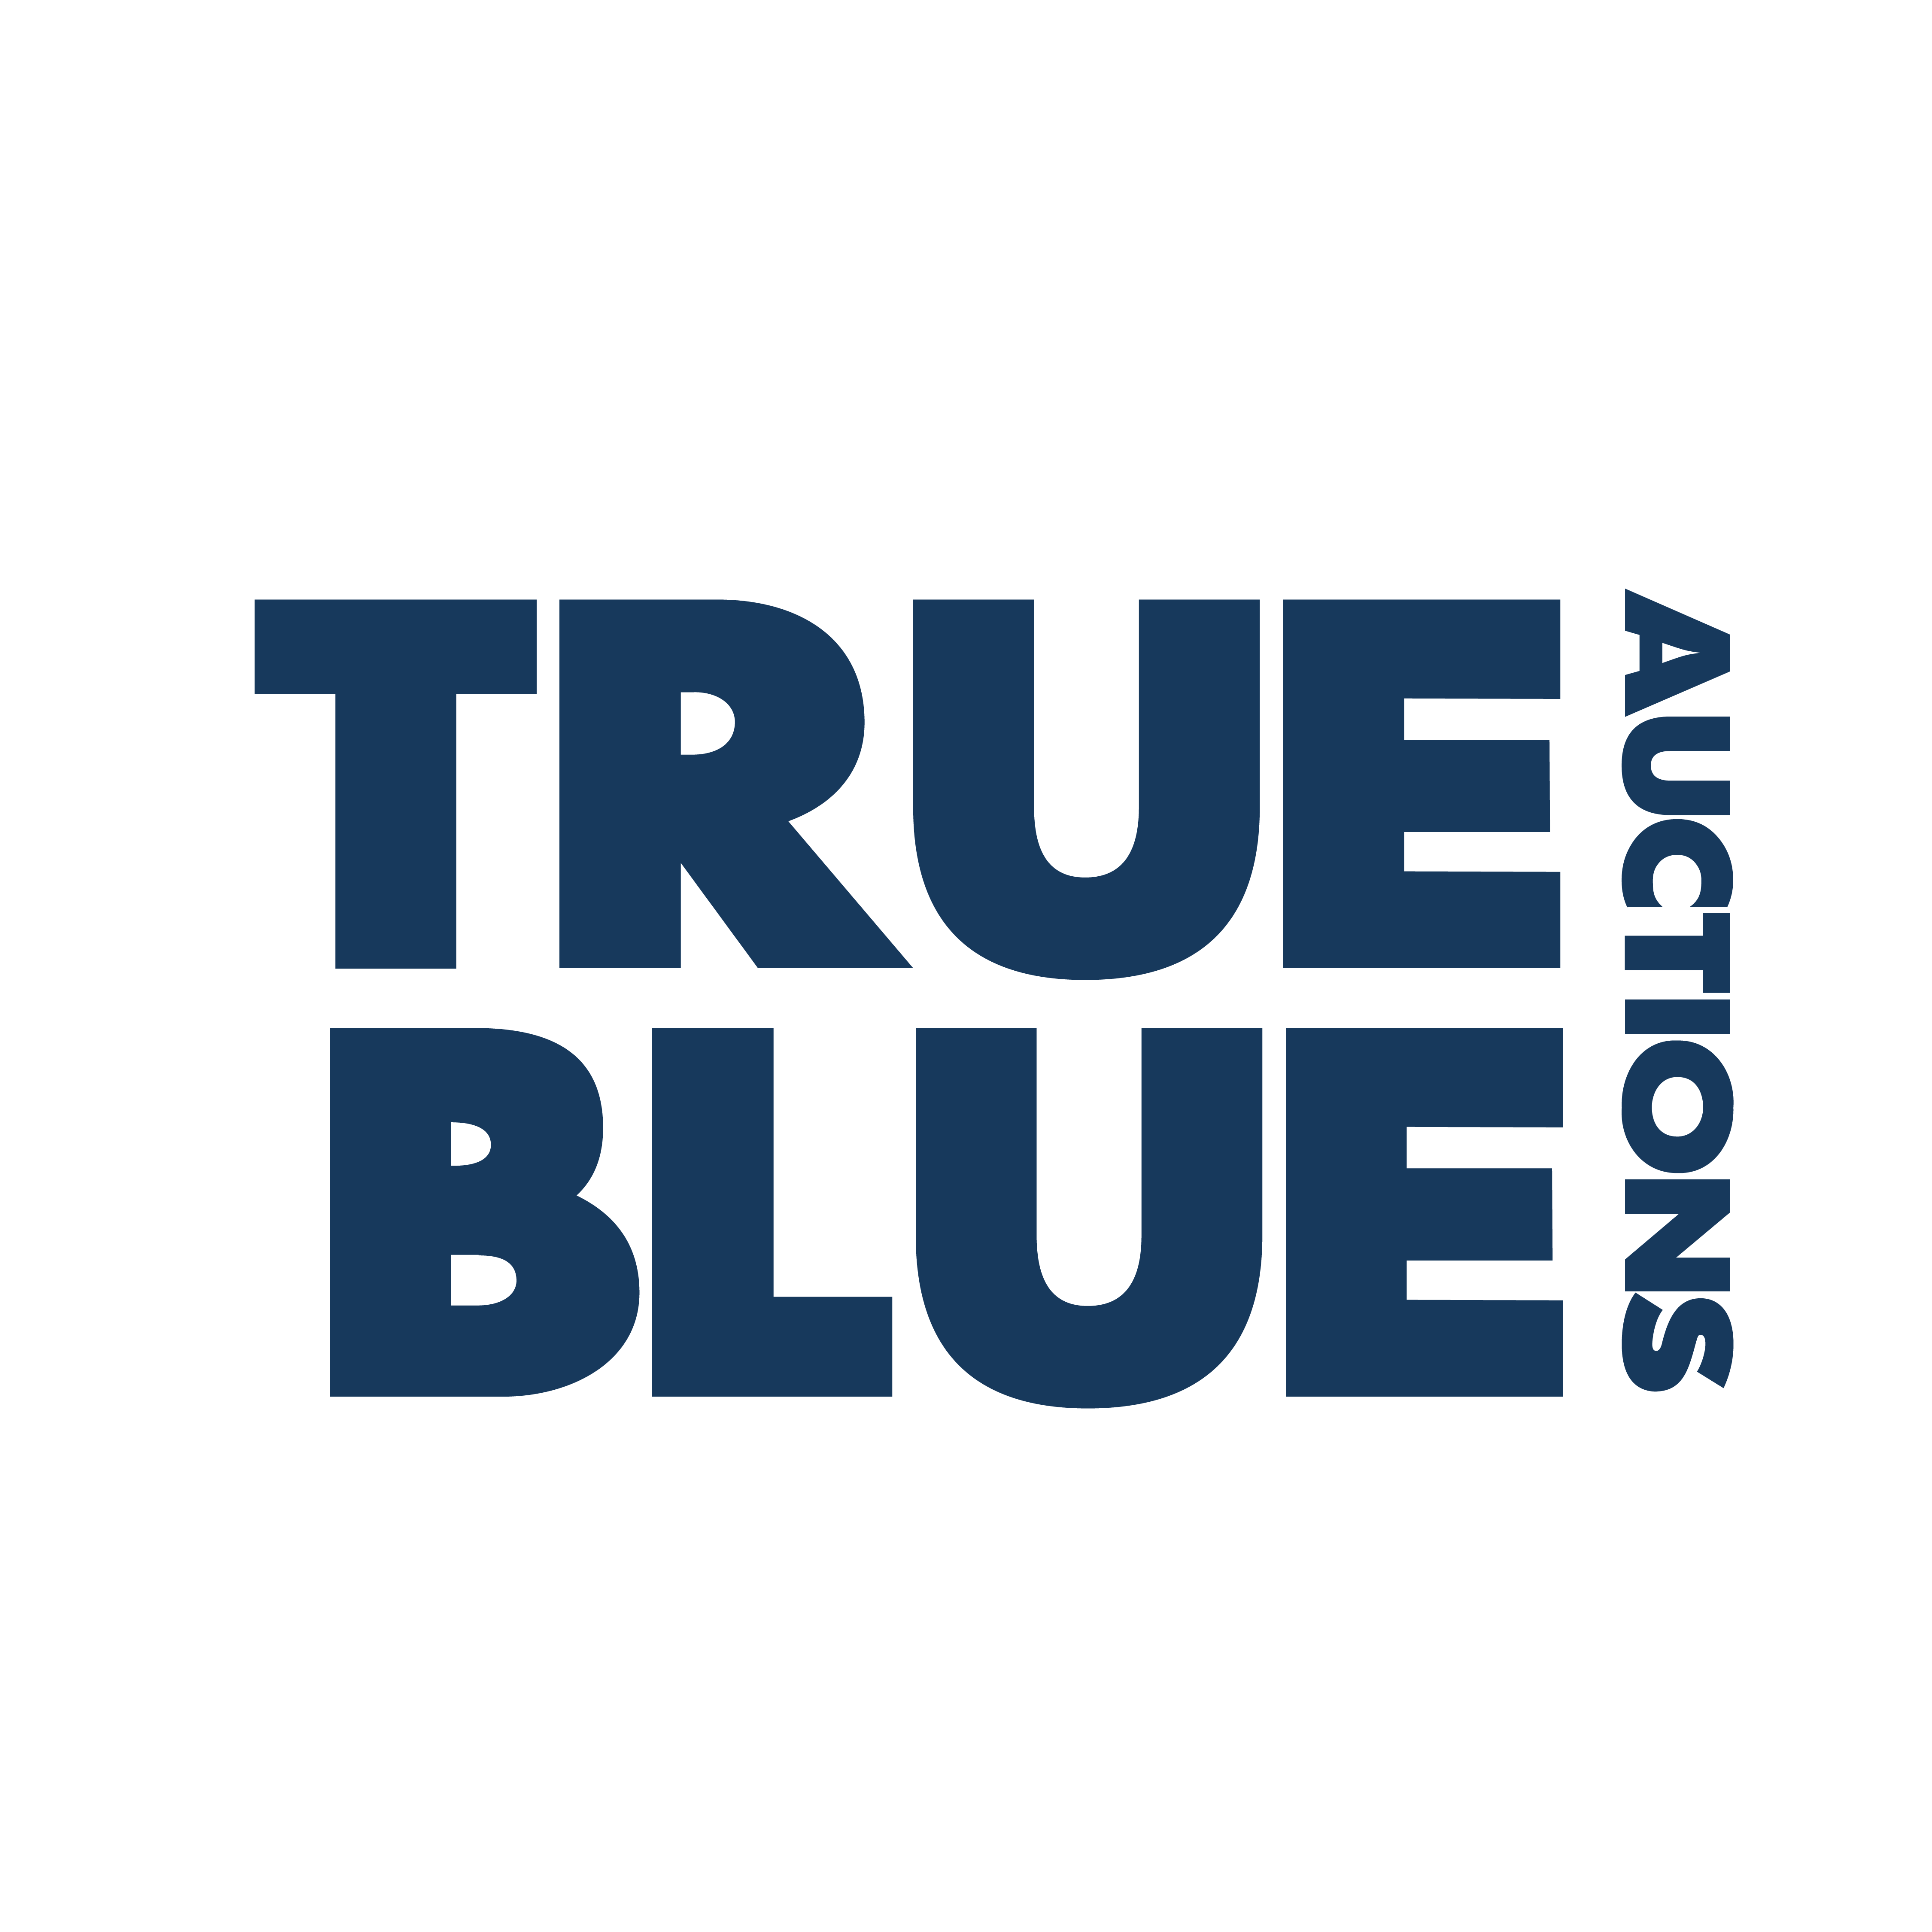 True Blue Auctions